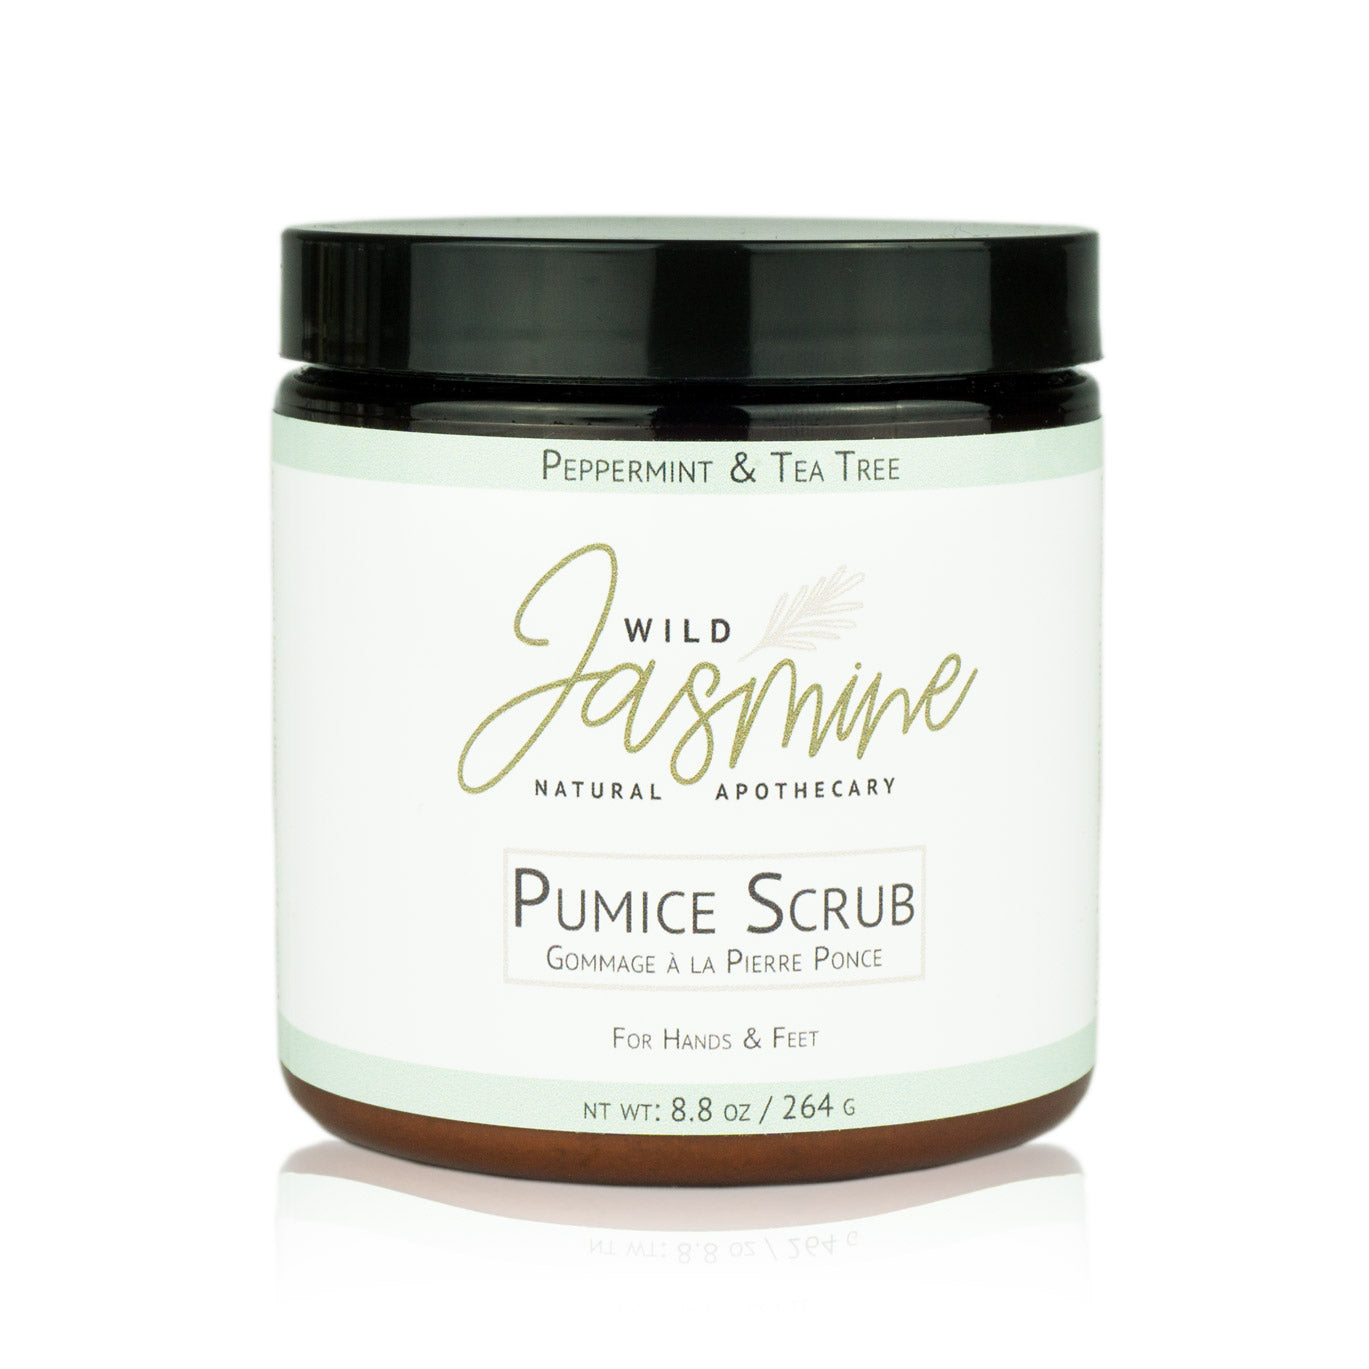 Pumice Scrub - Peppermint & Tea Tree